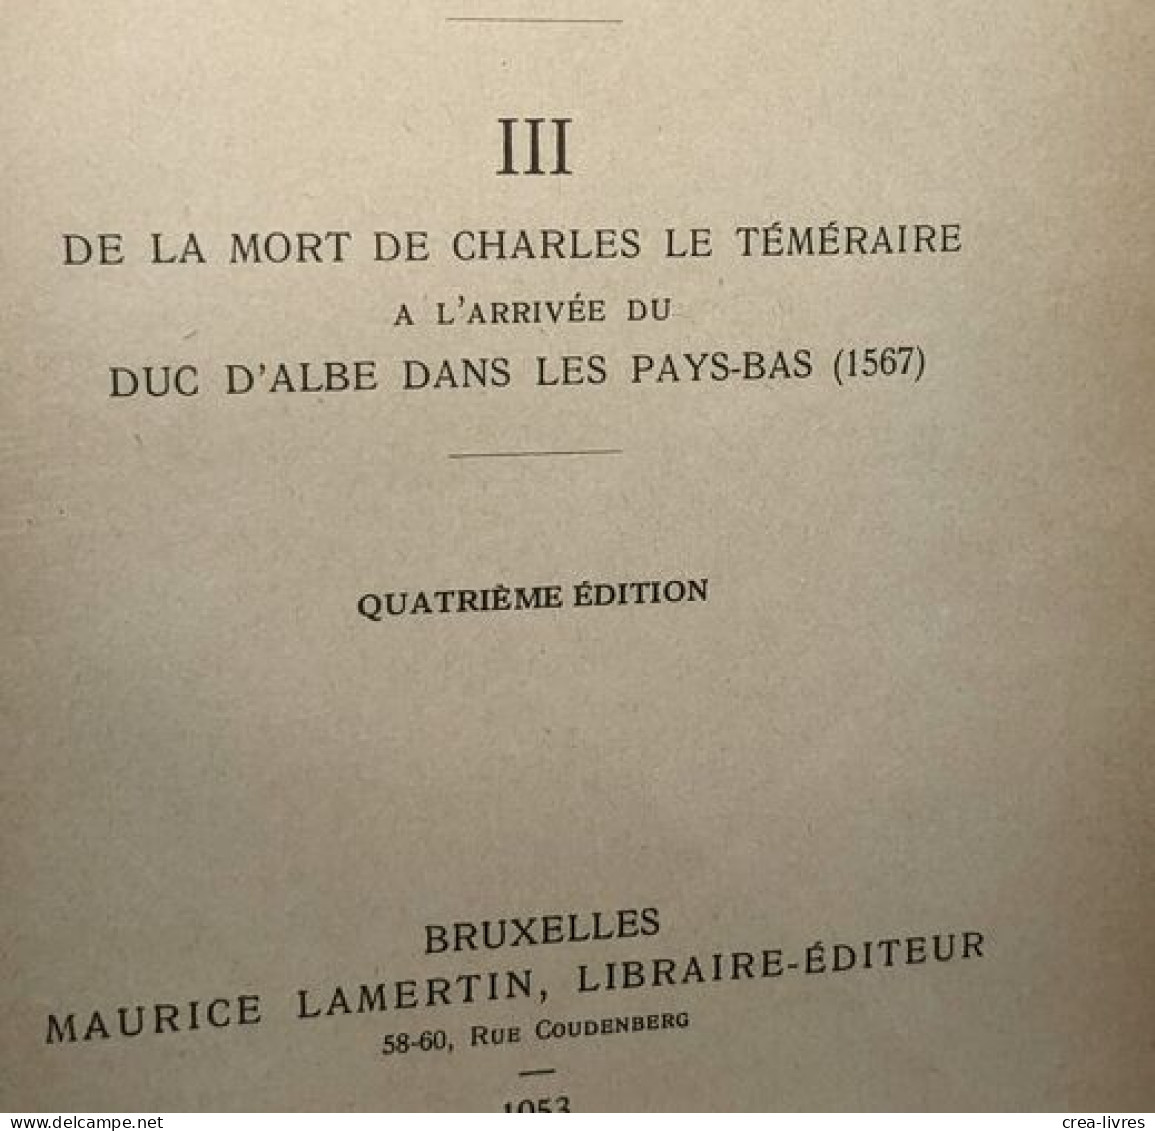 Histoire De La Belgique TOMES 1 (1929) 2 (1947) 3 (1953) 4 (1927) 5 (1921) Et 7 (1948) (tome 6 Manquant) - - Storia